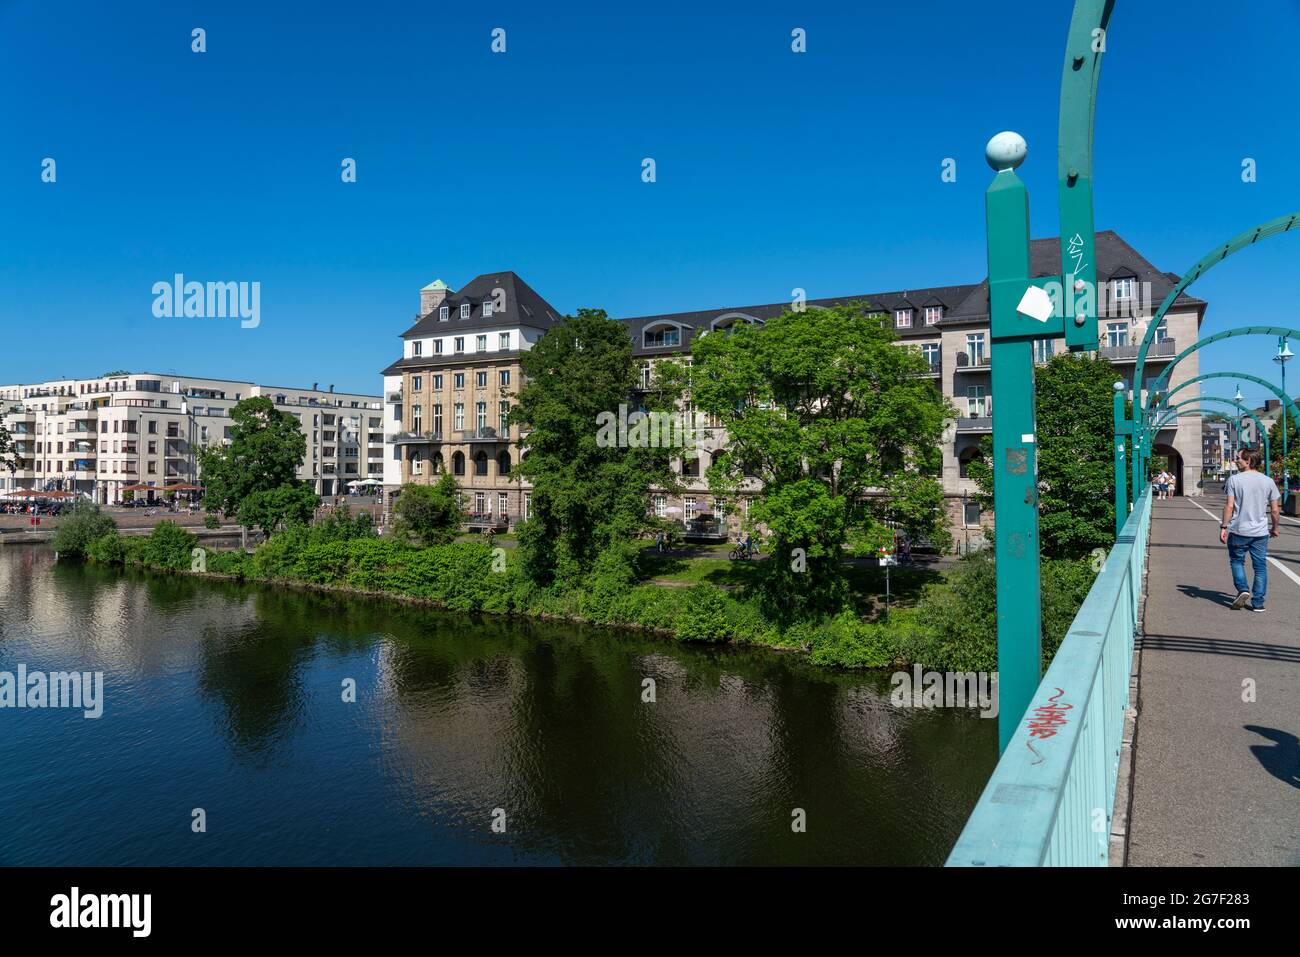 Das Stadtzentrum von Mülheim an der Ruhr, Ruhrpromenade, Wohn- und Geschäftshäuser, Gastronomie, Neubauten, Ruhrbania-Projekt, City Harbo Stockfoto